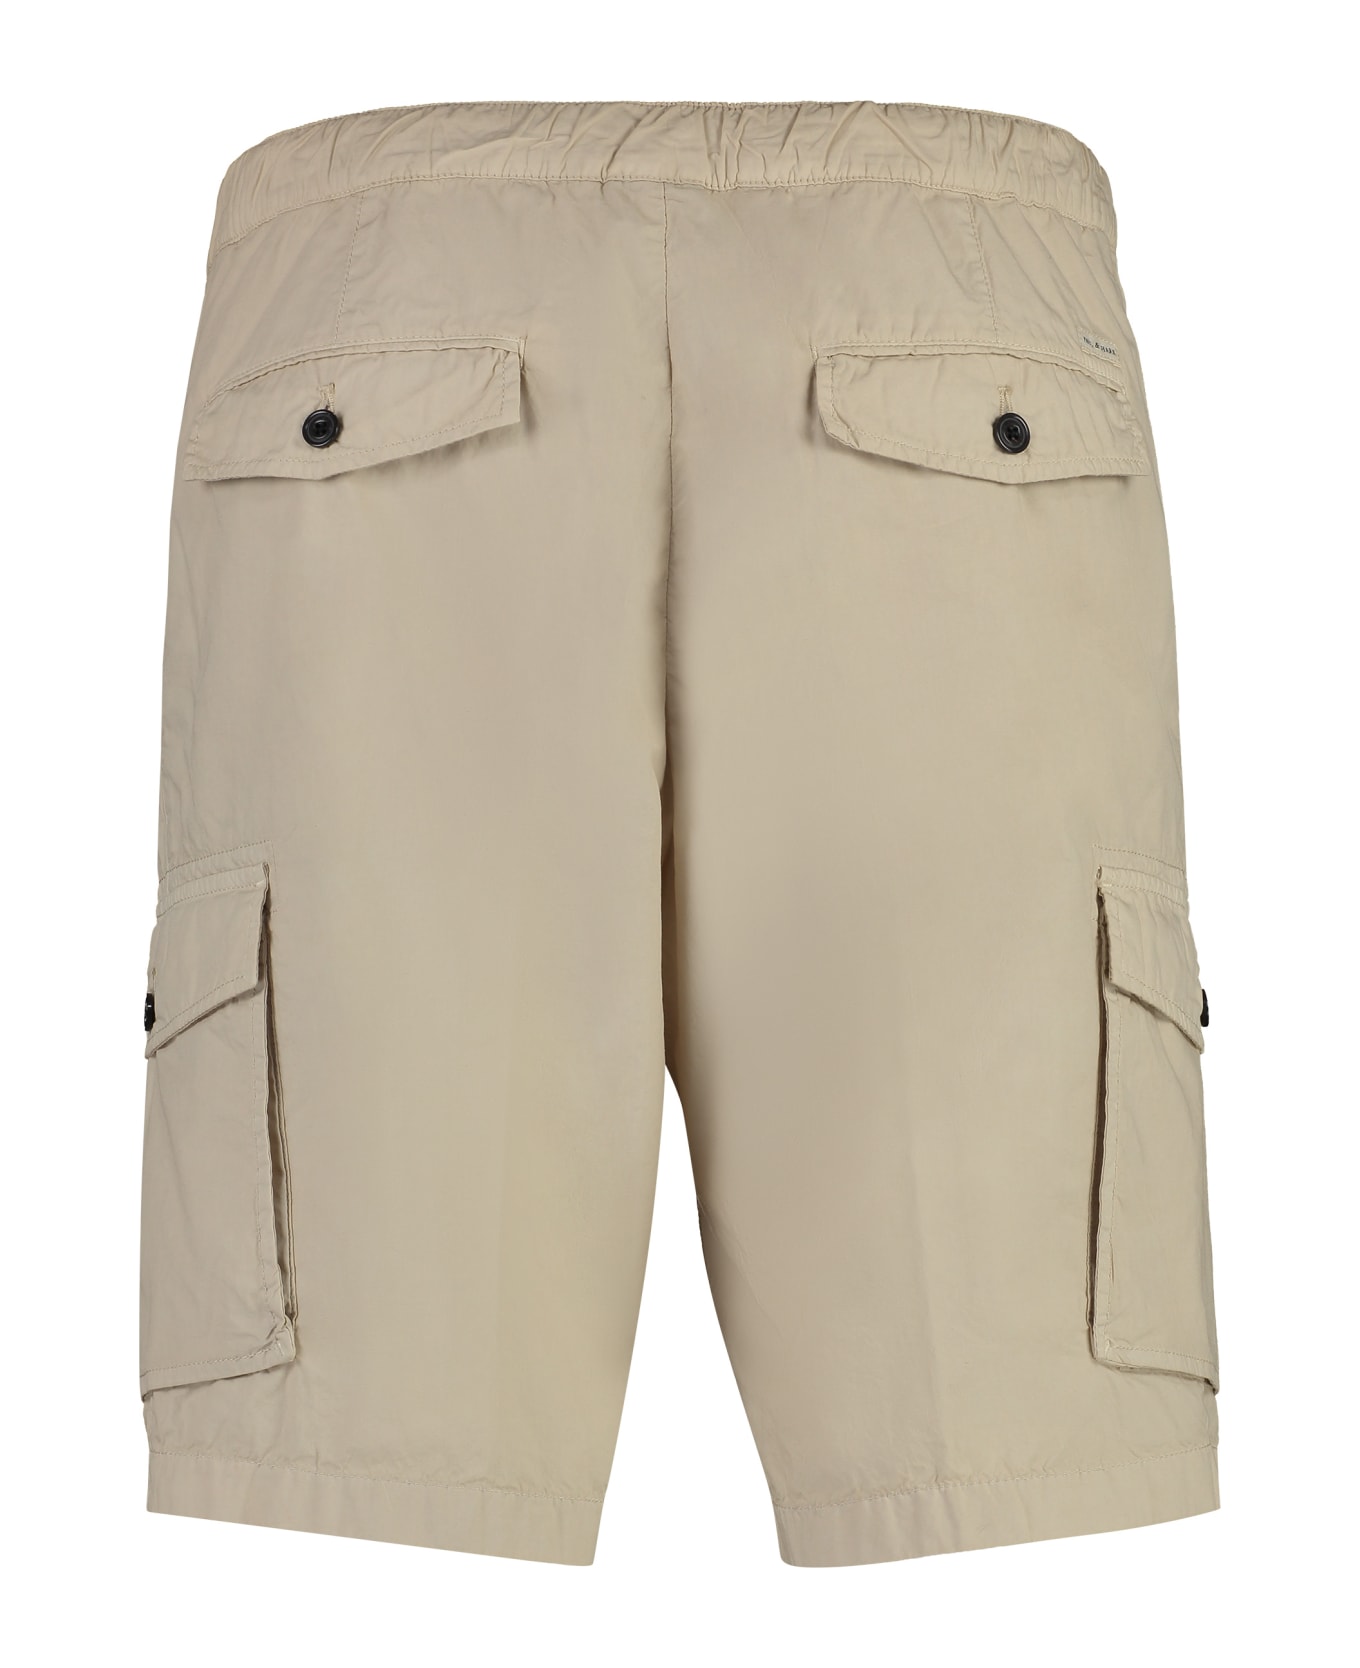 Paul&Shark Cotton Bermuda Shorts - Sand